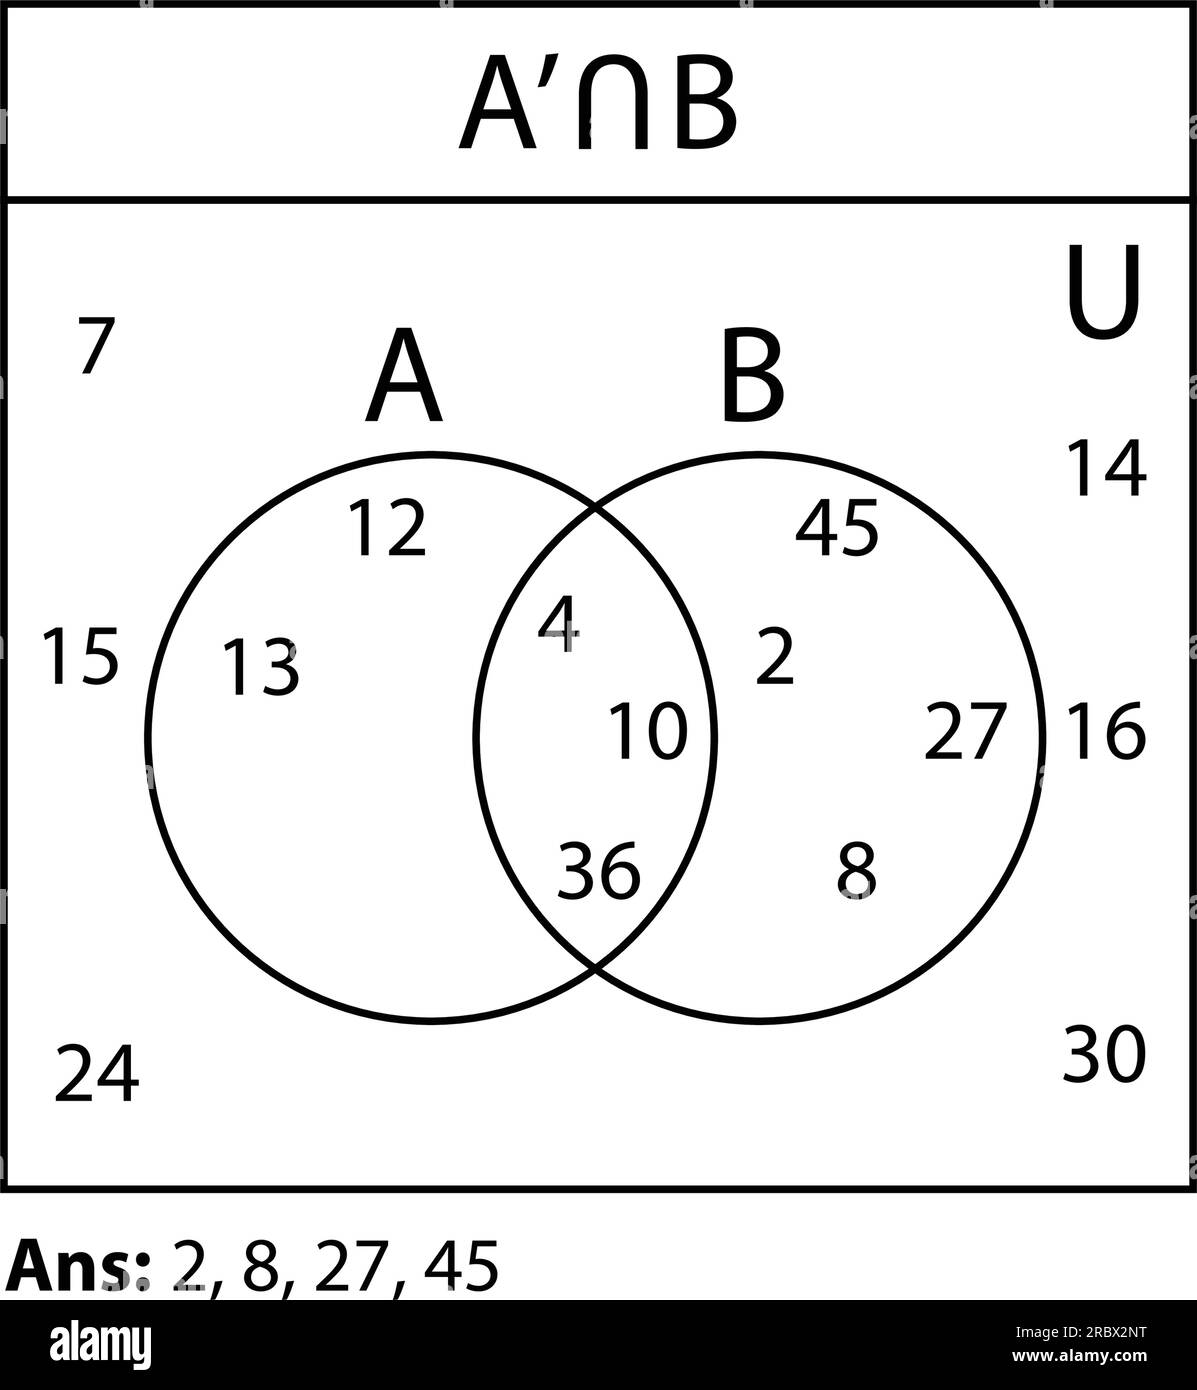 Diagramma Venn. Serie di diagrammi Venn di contorno con A, B e cerchi sovrapposti. grafici statistici, presentazioni e layout infografici. Illustrazione Vettoriale